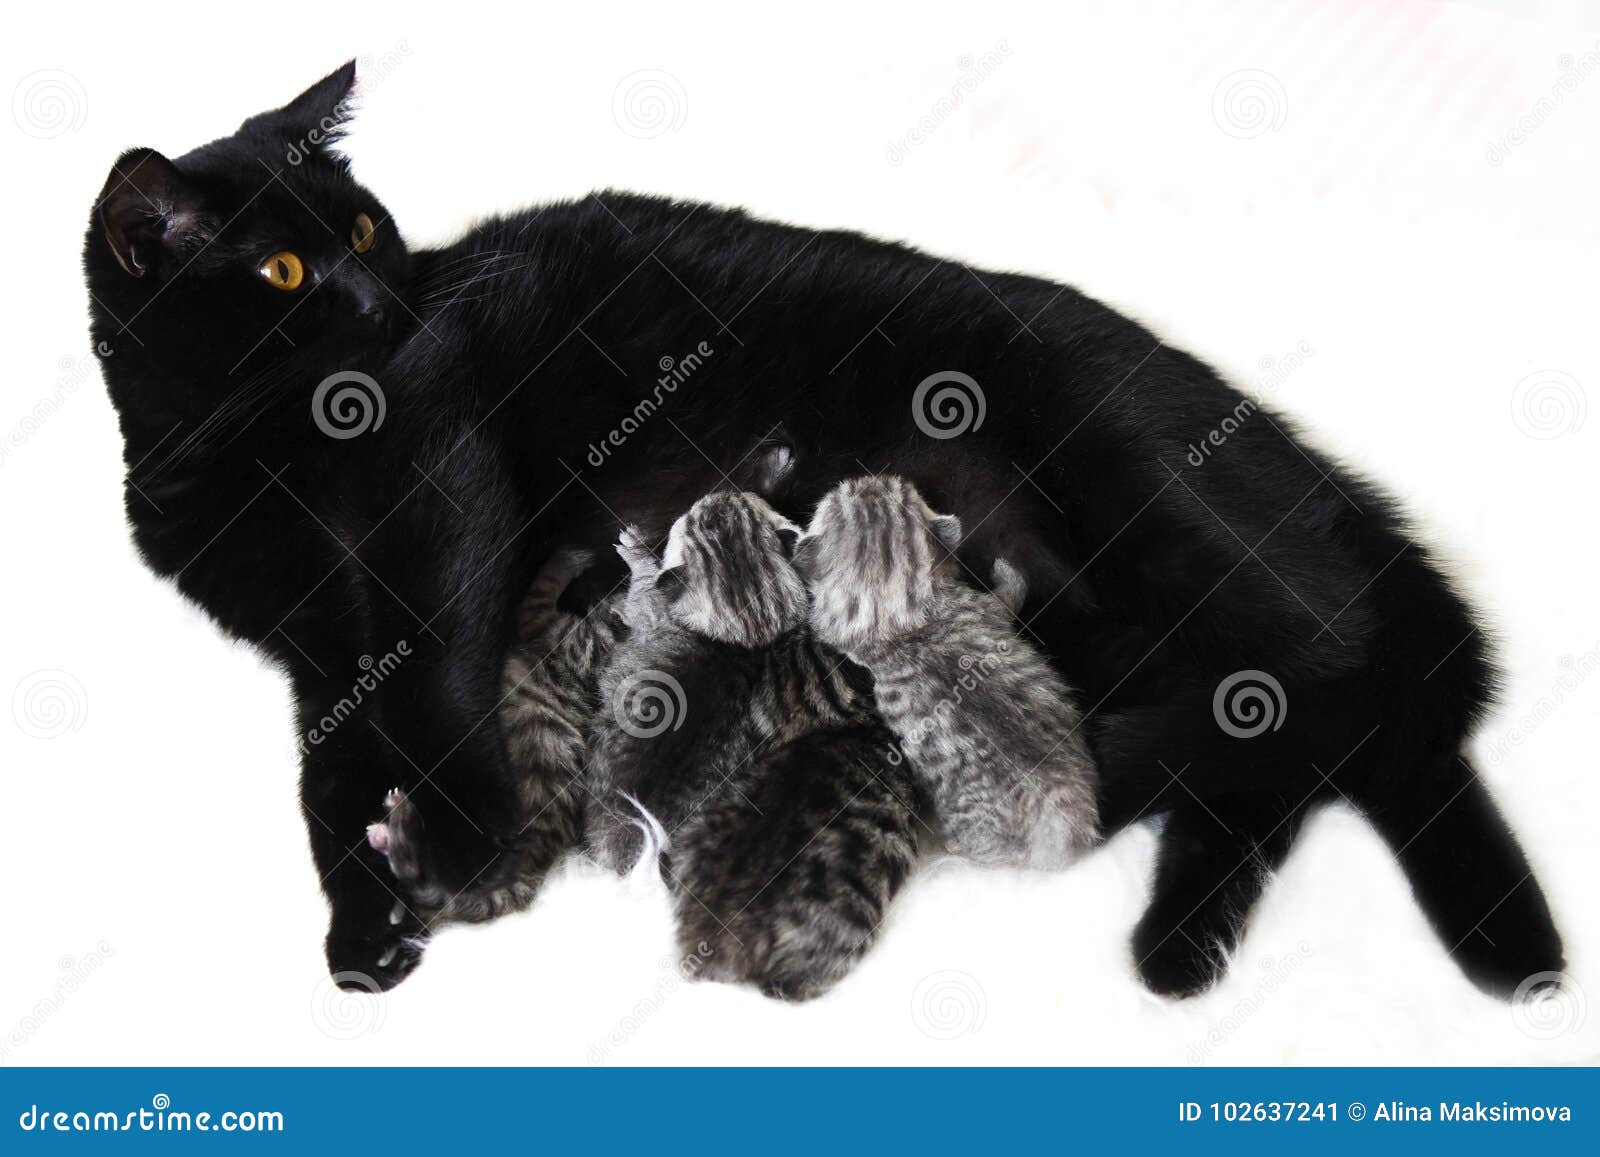 Какие котята рождаются у черной кошки. Черная кошка с новорожденными котятами. Черная кошка родила. Черно-белая кошка с новорожденными котятами. Черная кошка кормит котят.